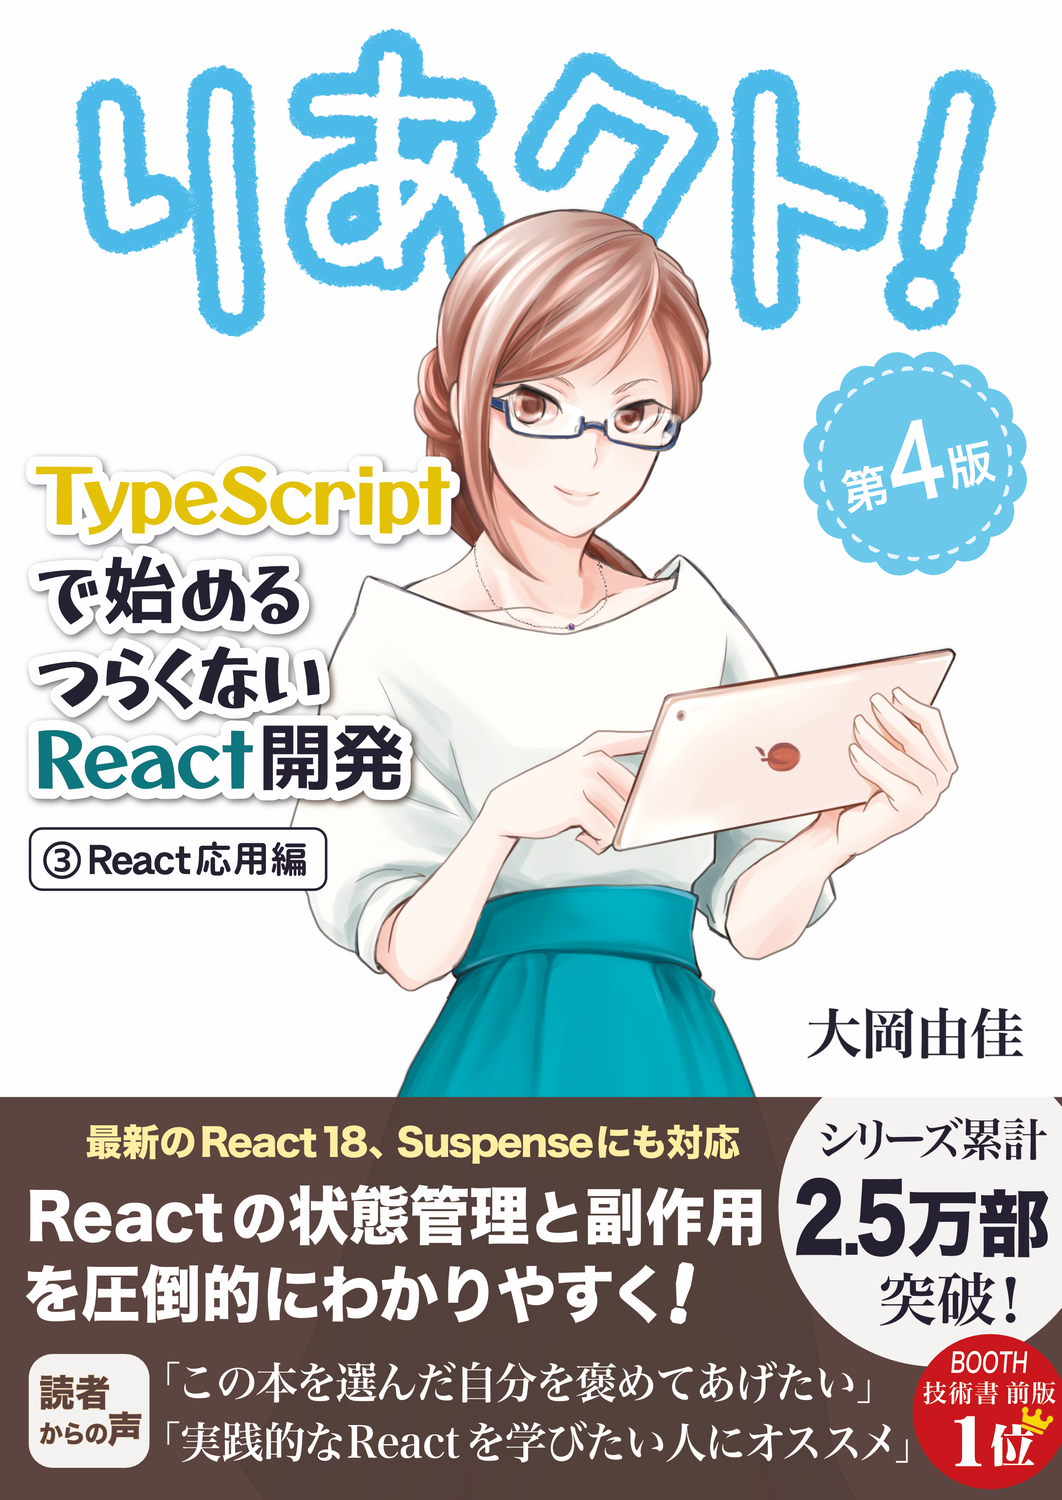 りあクト！ TypeScriptで始めるつらくないReact開発 第4版【① 言語